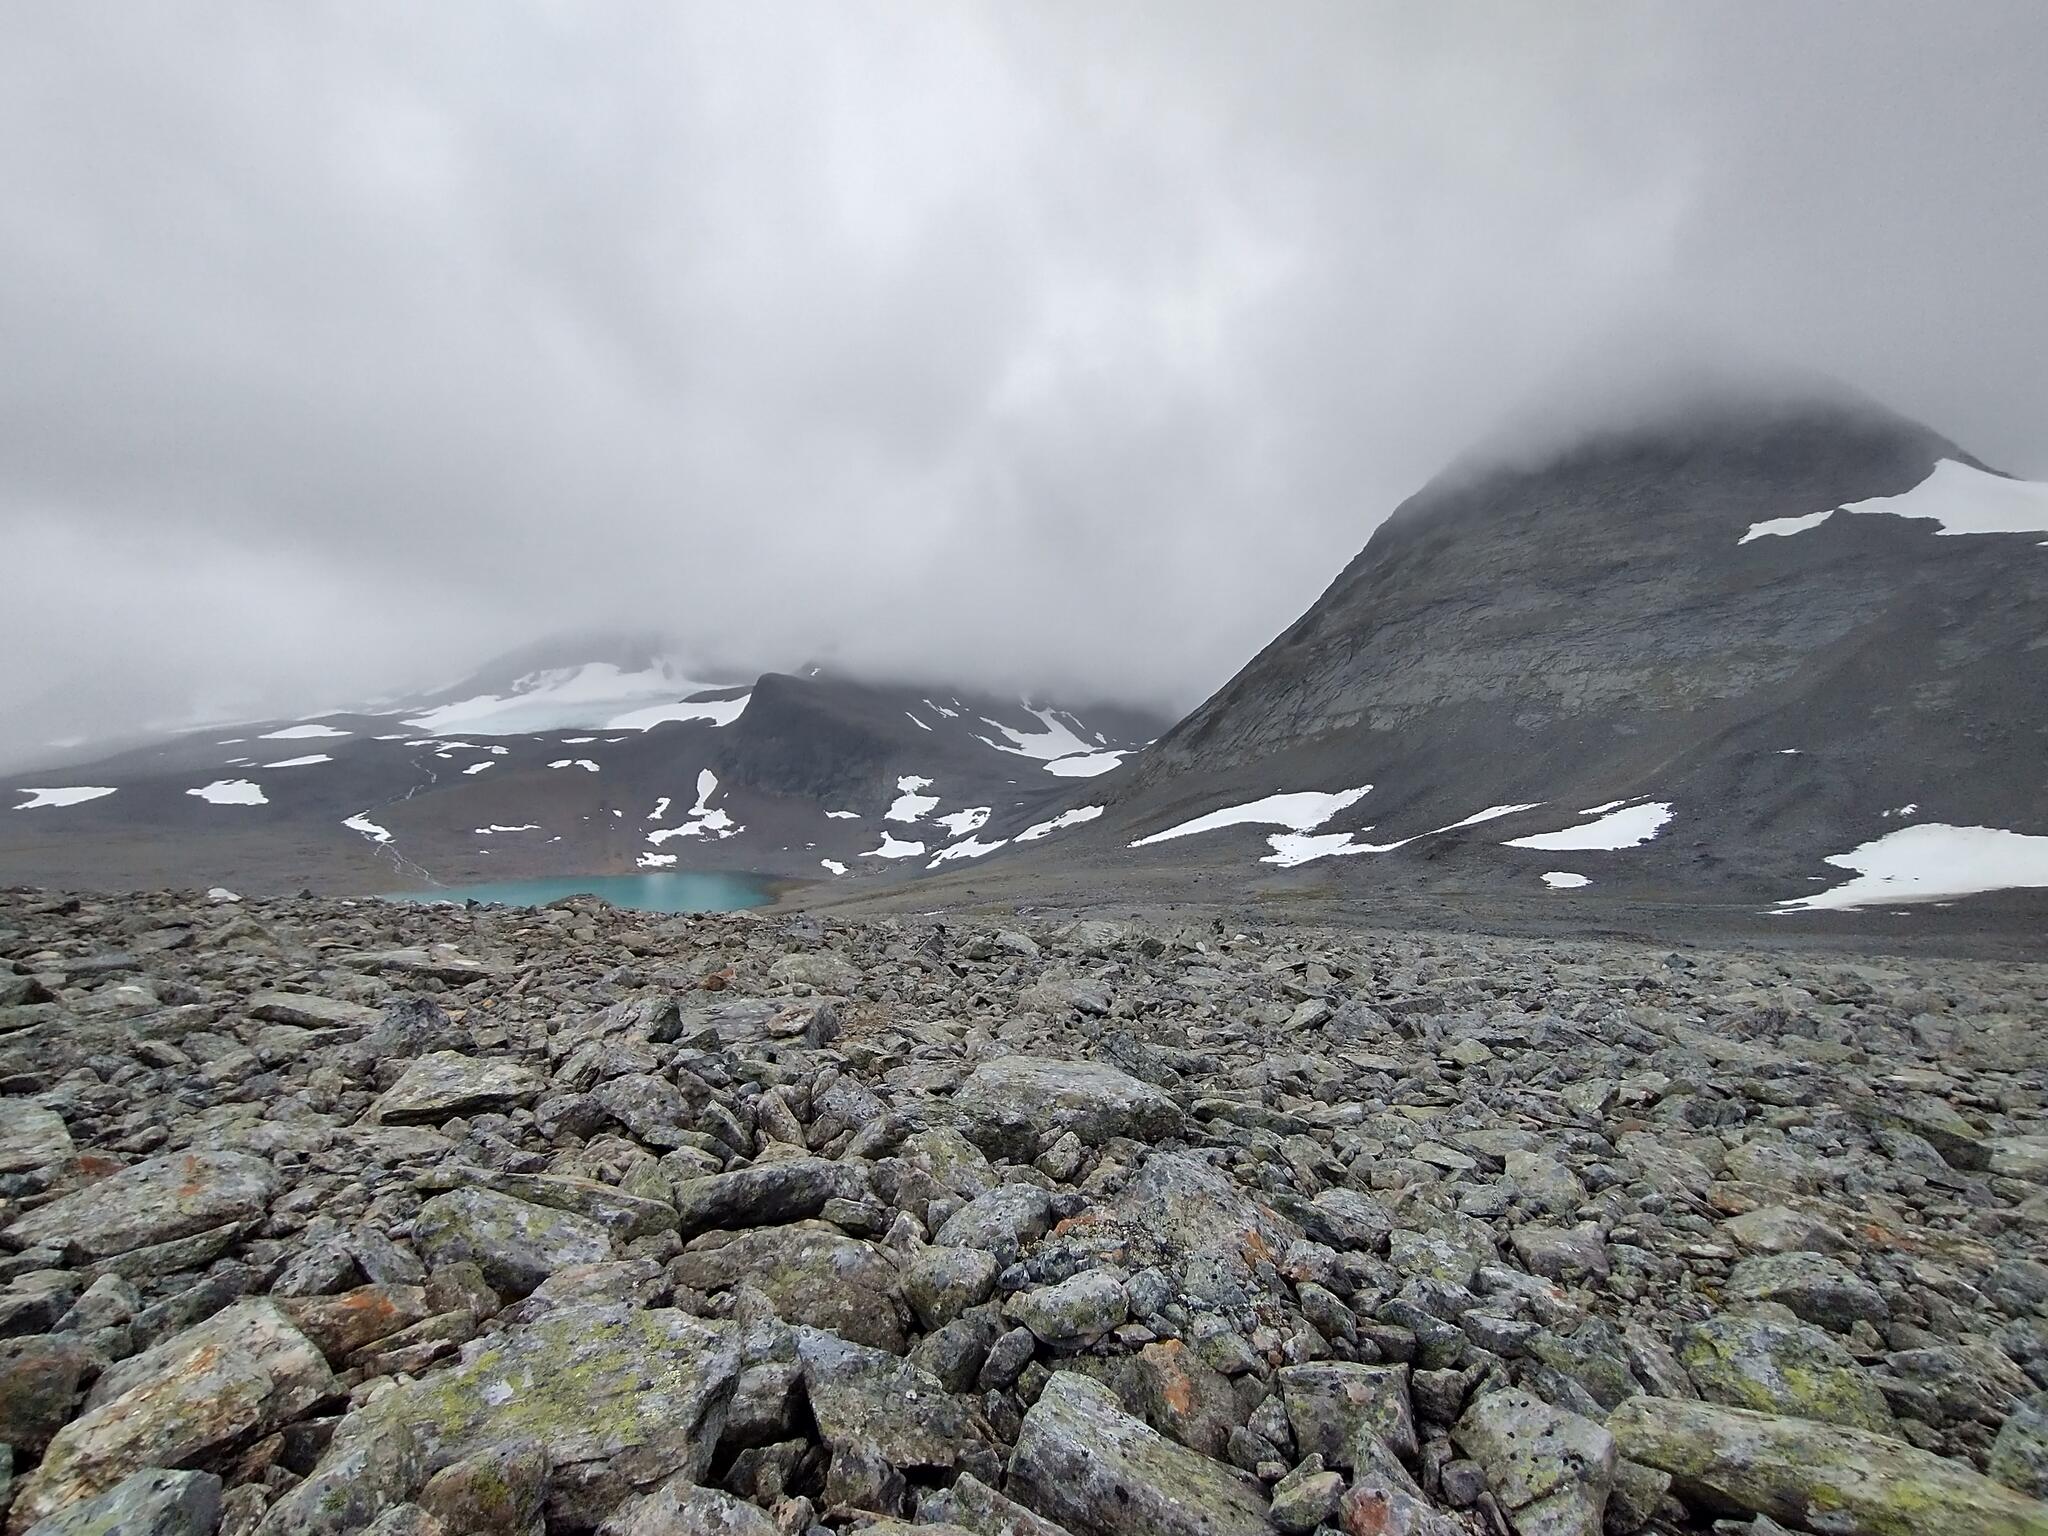 Tillbakablick mot sjön 1078 och toppen 1750 (till höger). I mitten i bakgrunden ser man Tjäktjatjåkkamassivet. 